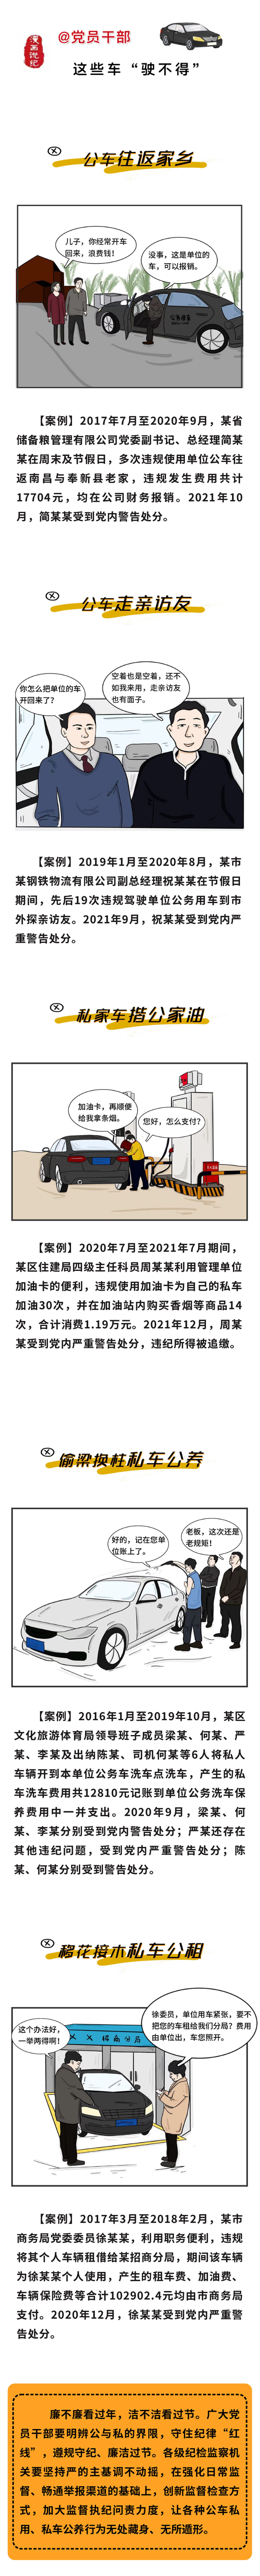 漫画说纪 _ 过年了，这些车“驶不得”————要闻——中央纪委国家监委网站.png